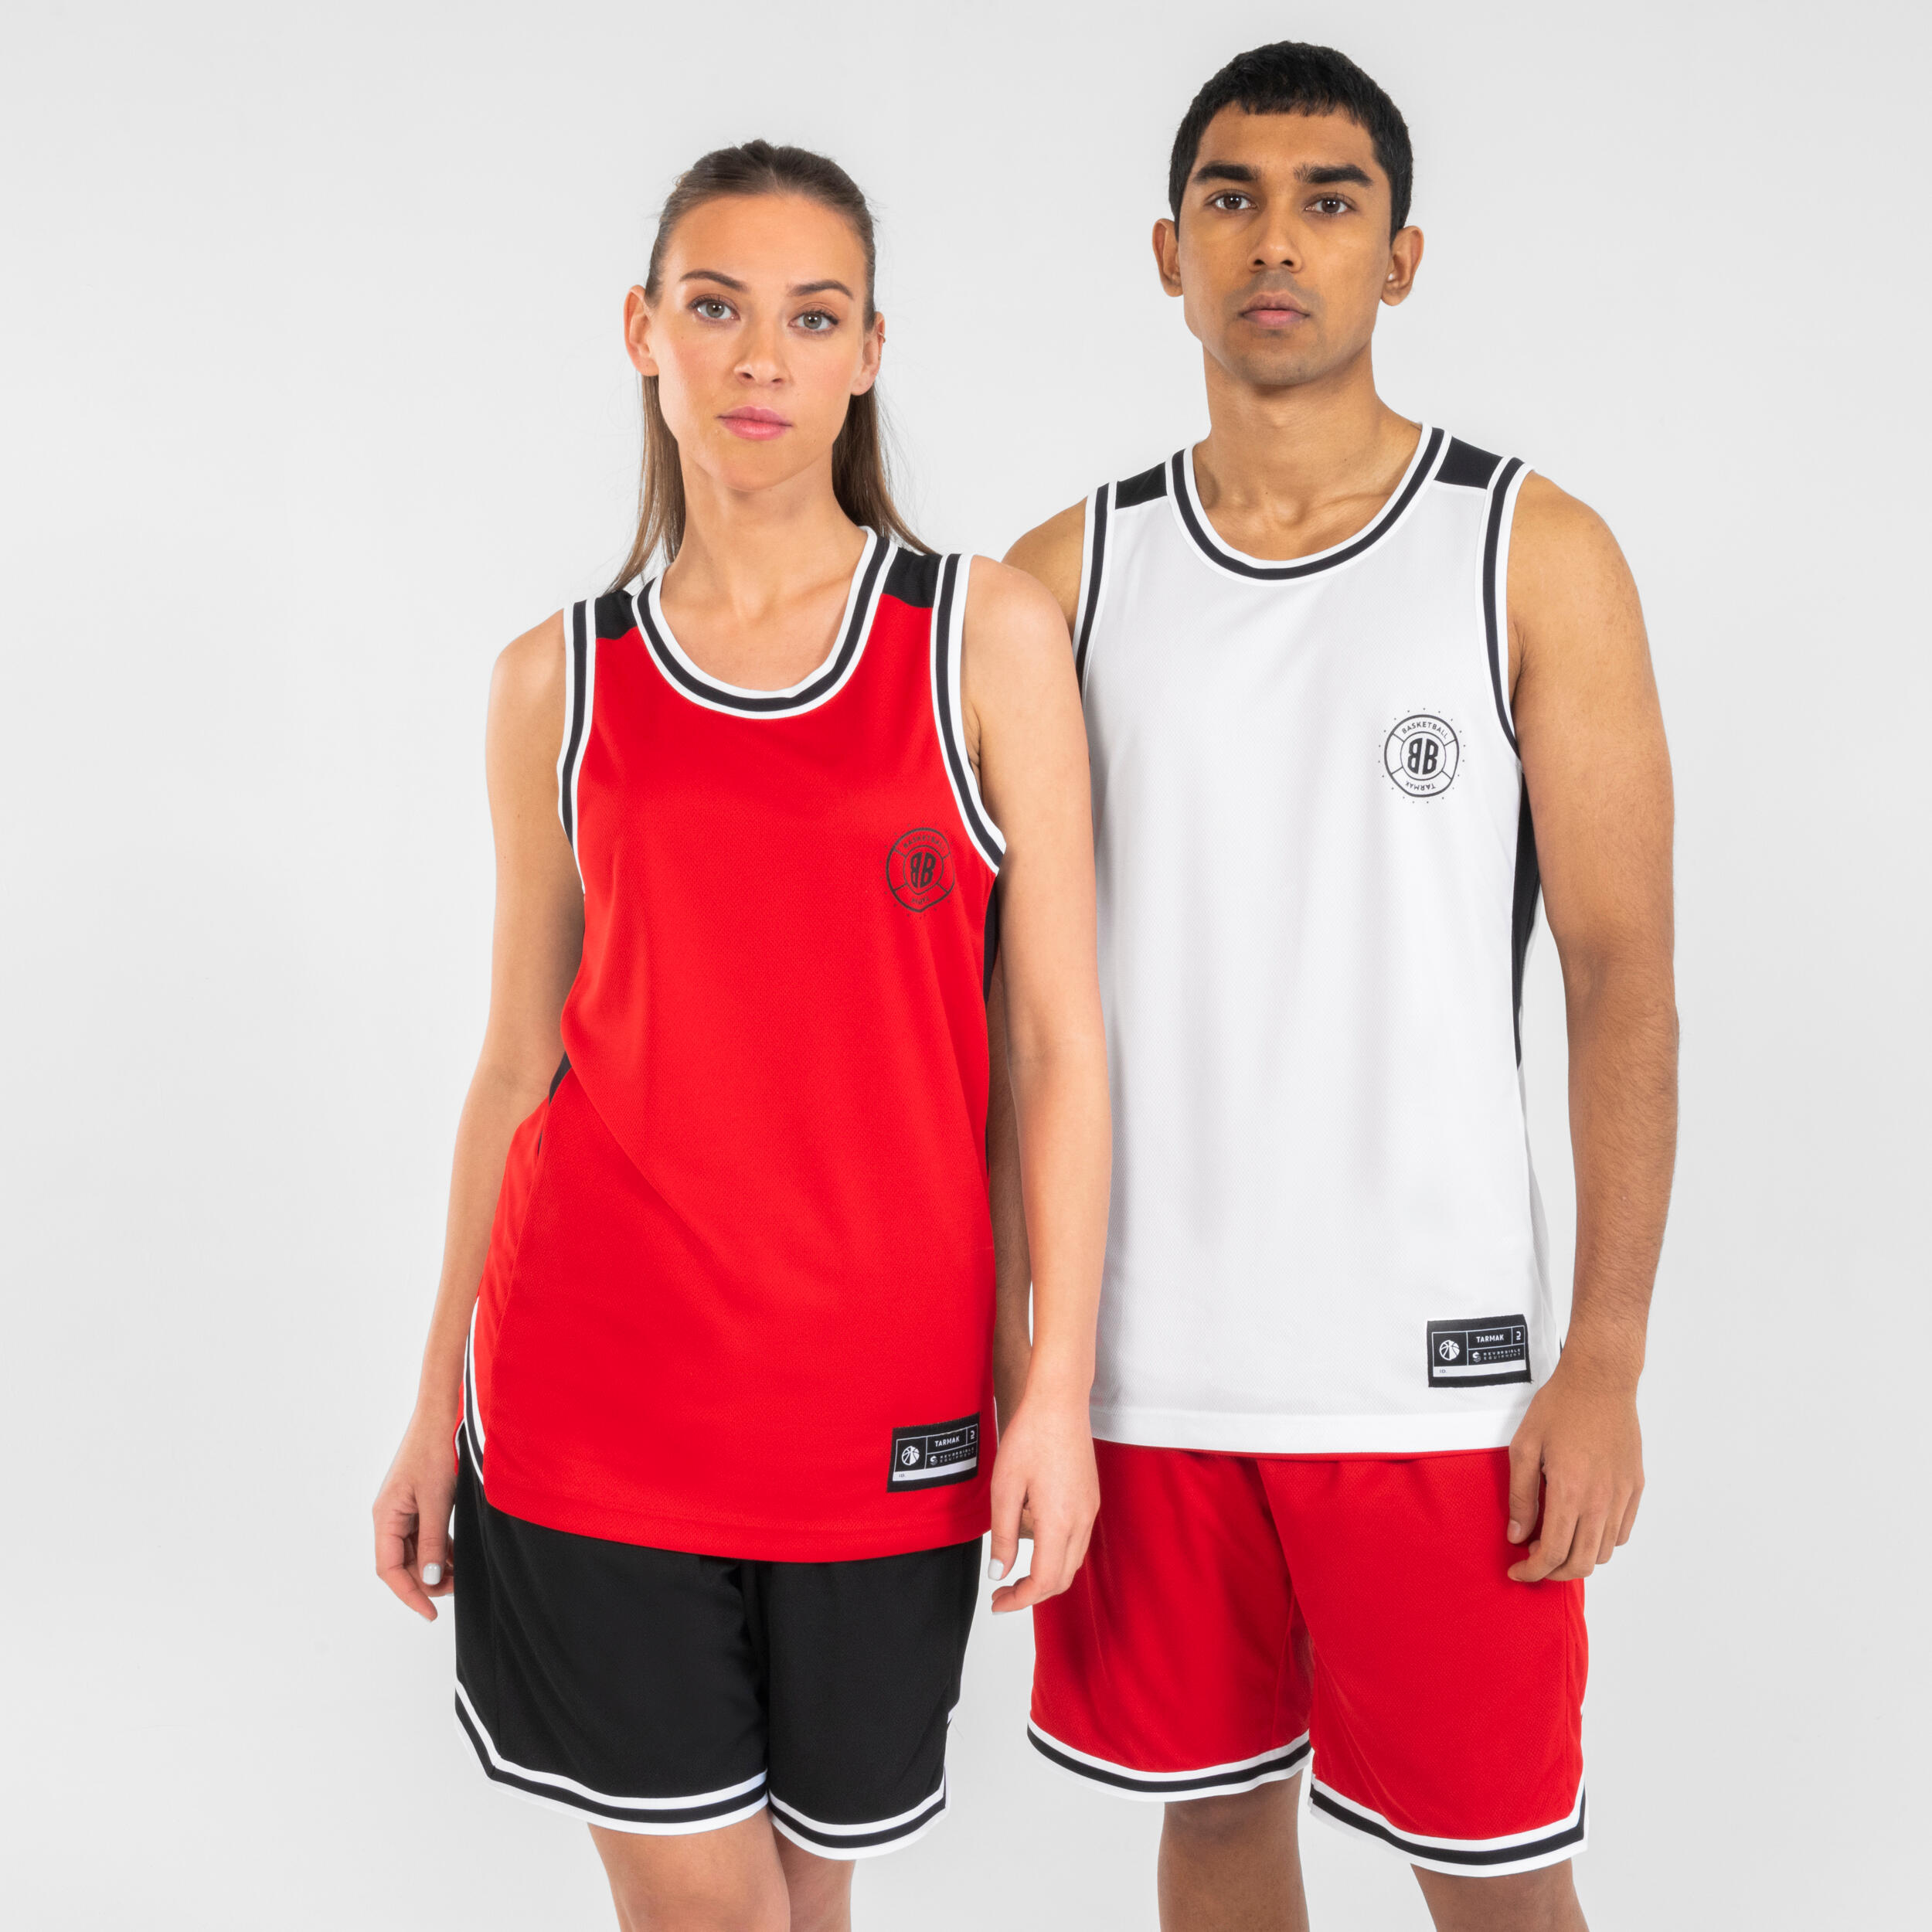 Men's/Women's Reversible Sleeveless Basketball Jersey T500 - White/Red 1/13